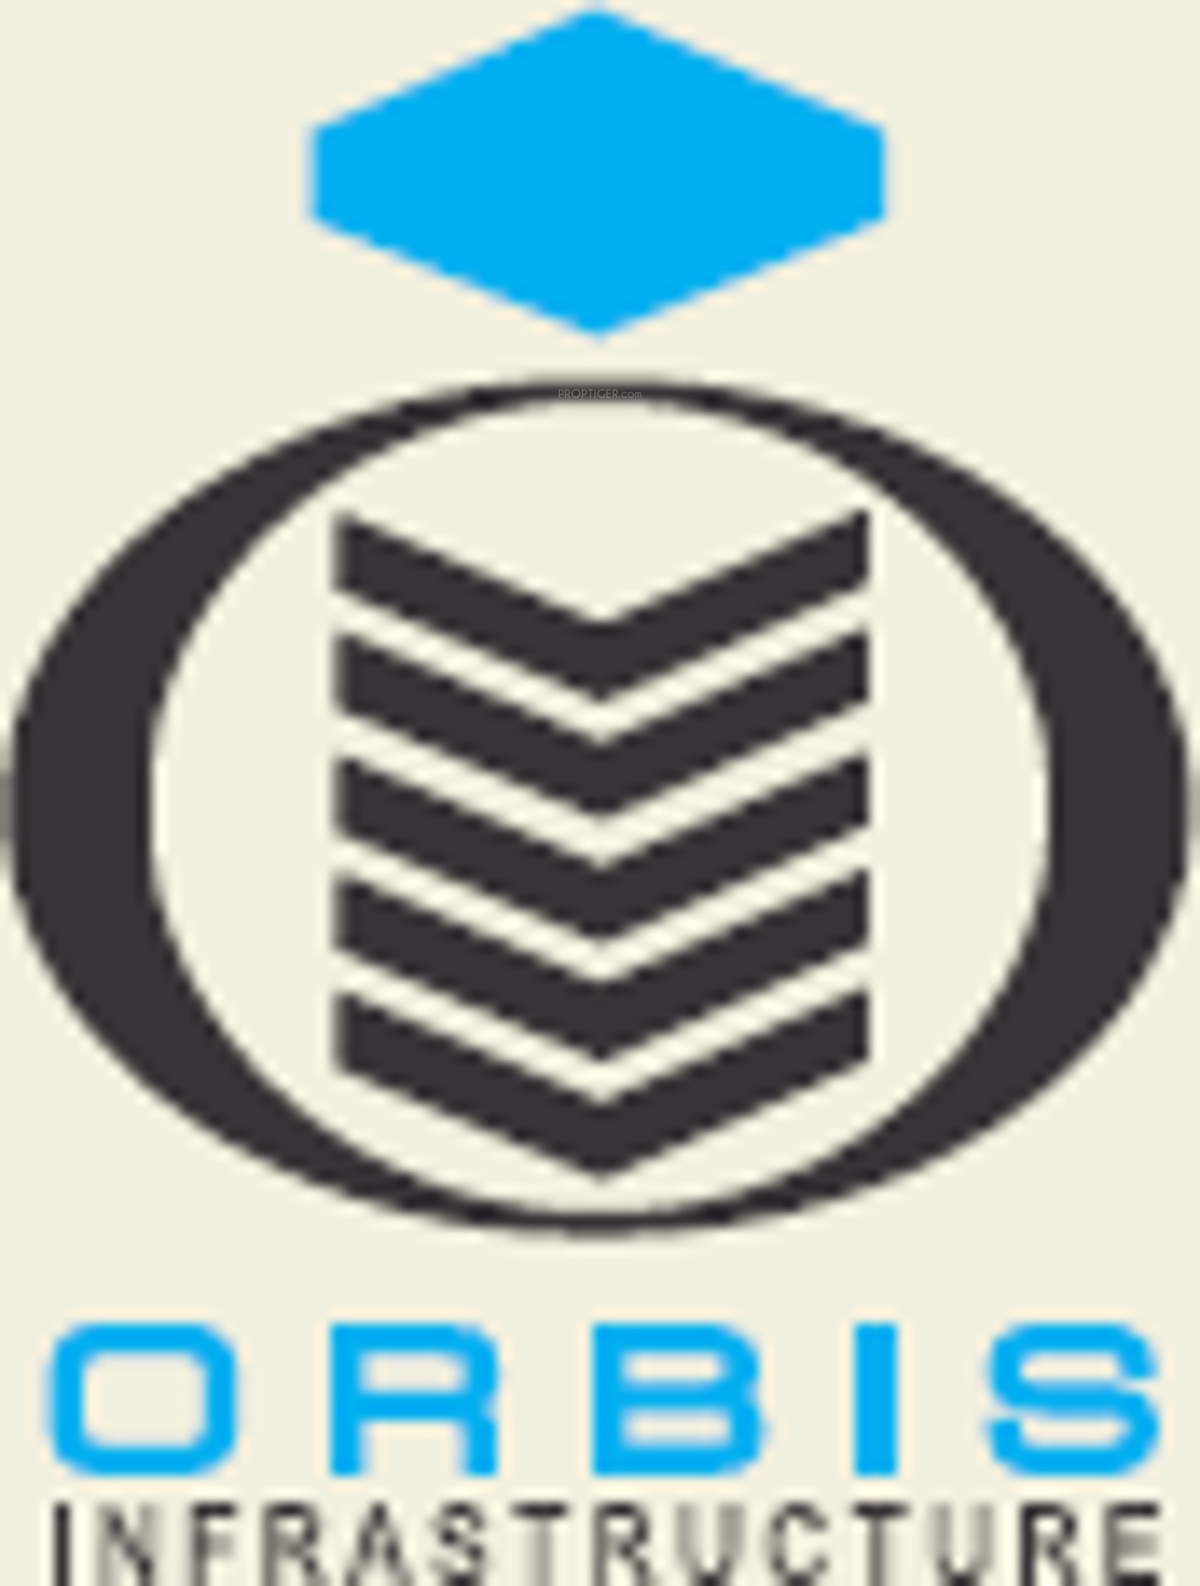 revenue earning for orbis technologies